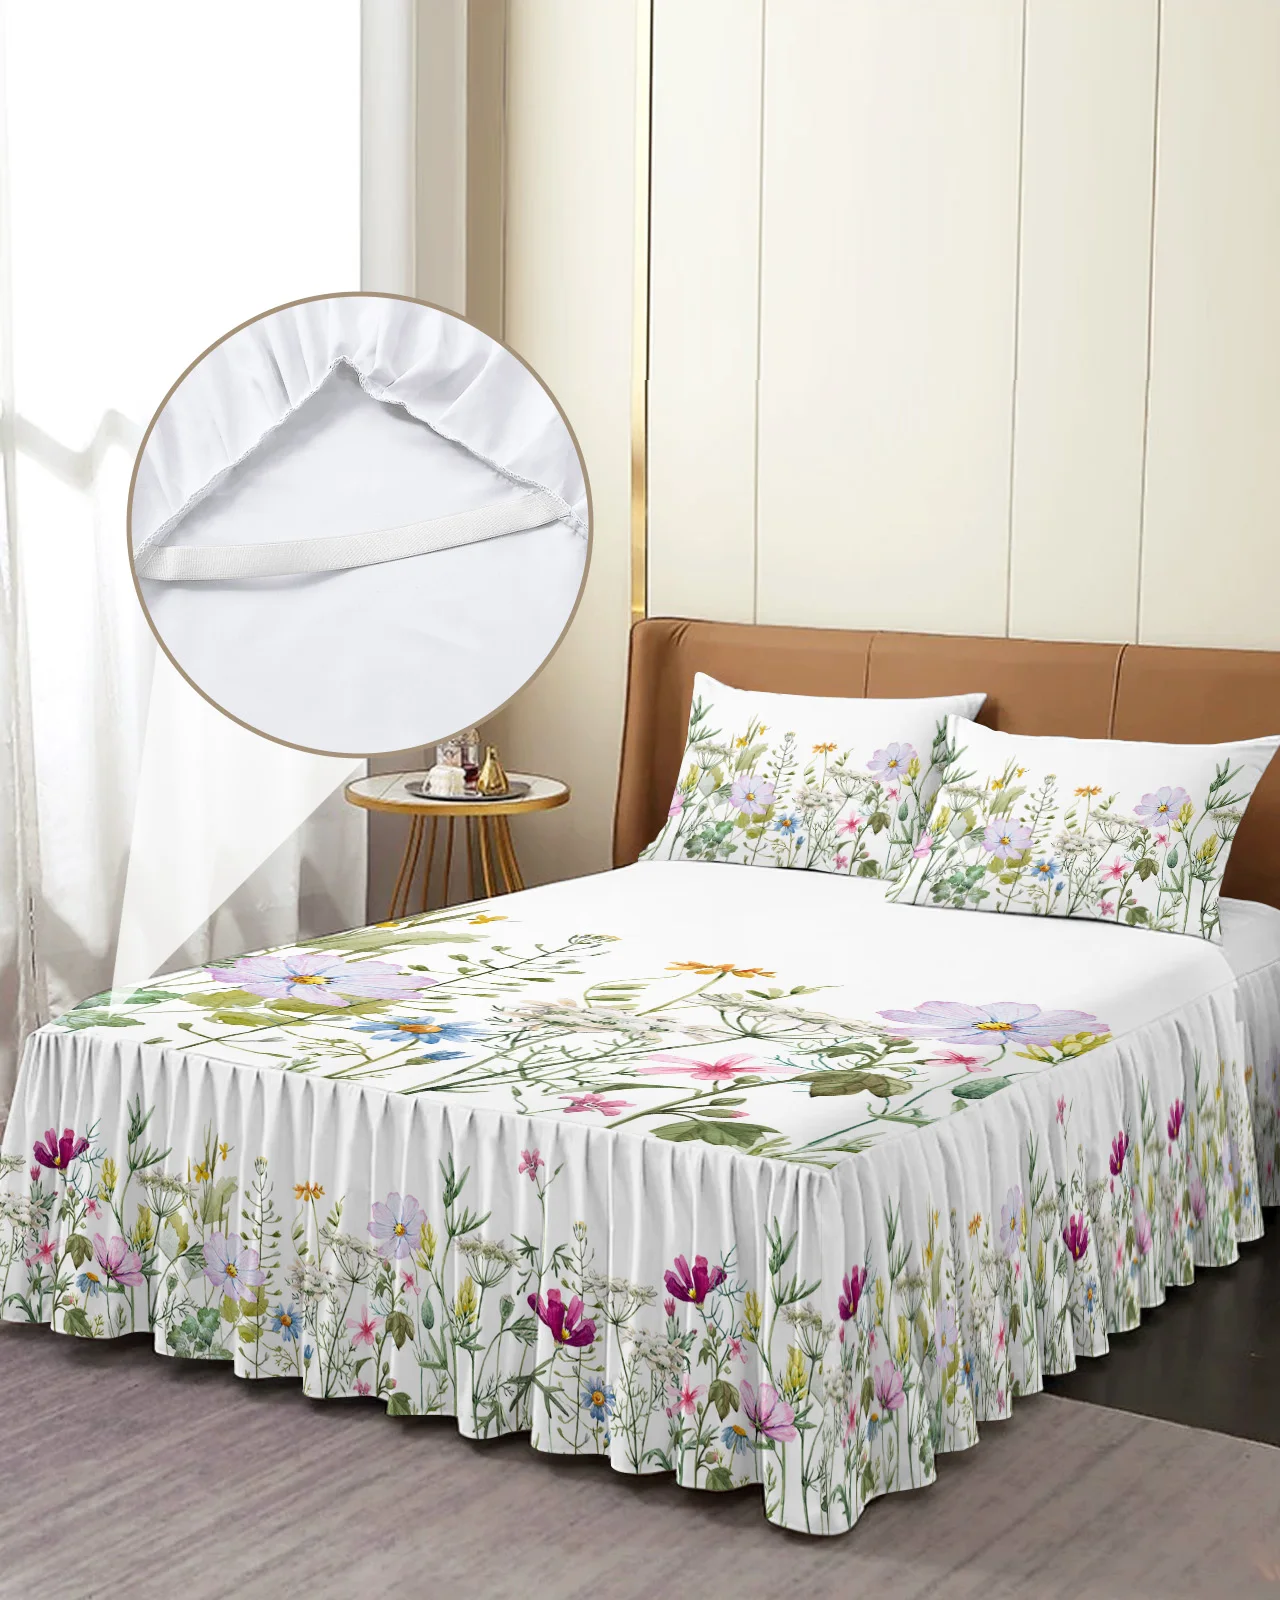 האביב פרח וניל פרח בר החצאית למיטה אלסטי מצויד בכיסוי מיטה עם כרית כיסוי מזרן סט מצעים מיטה זוגית